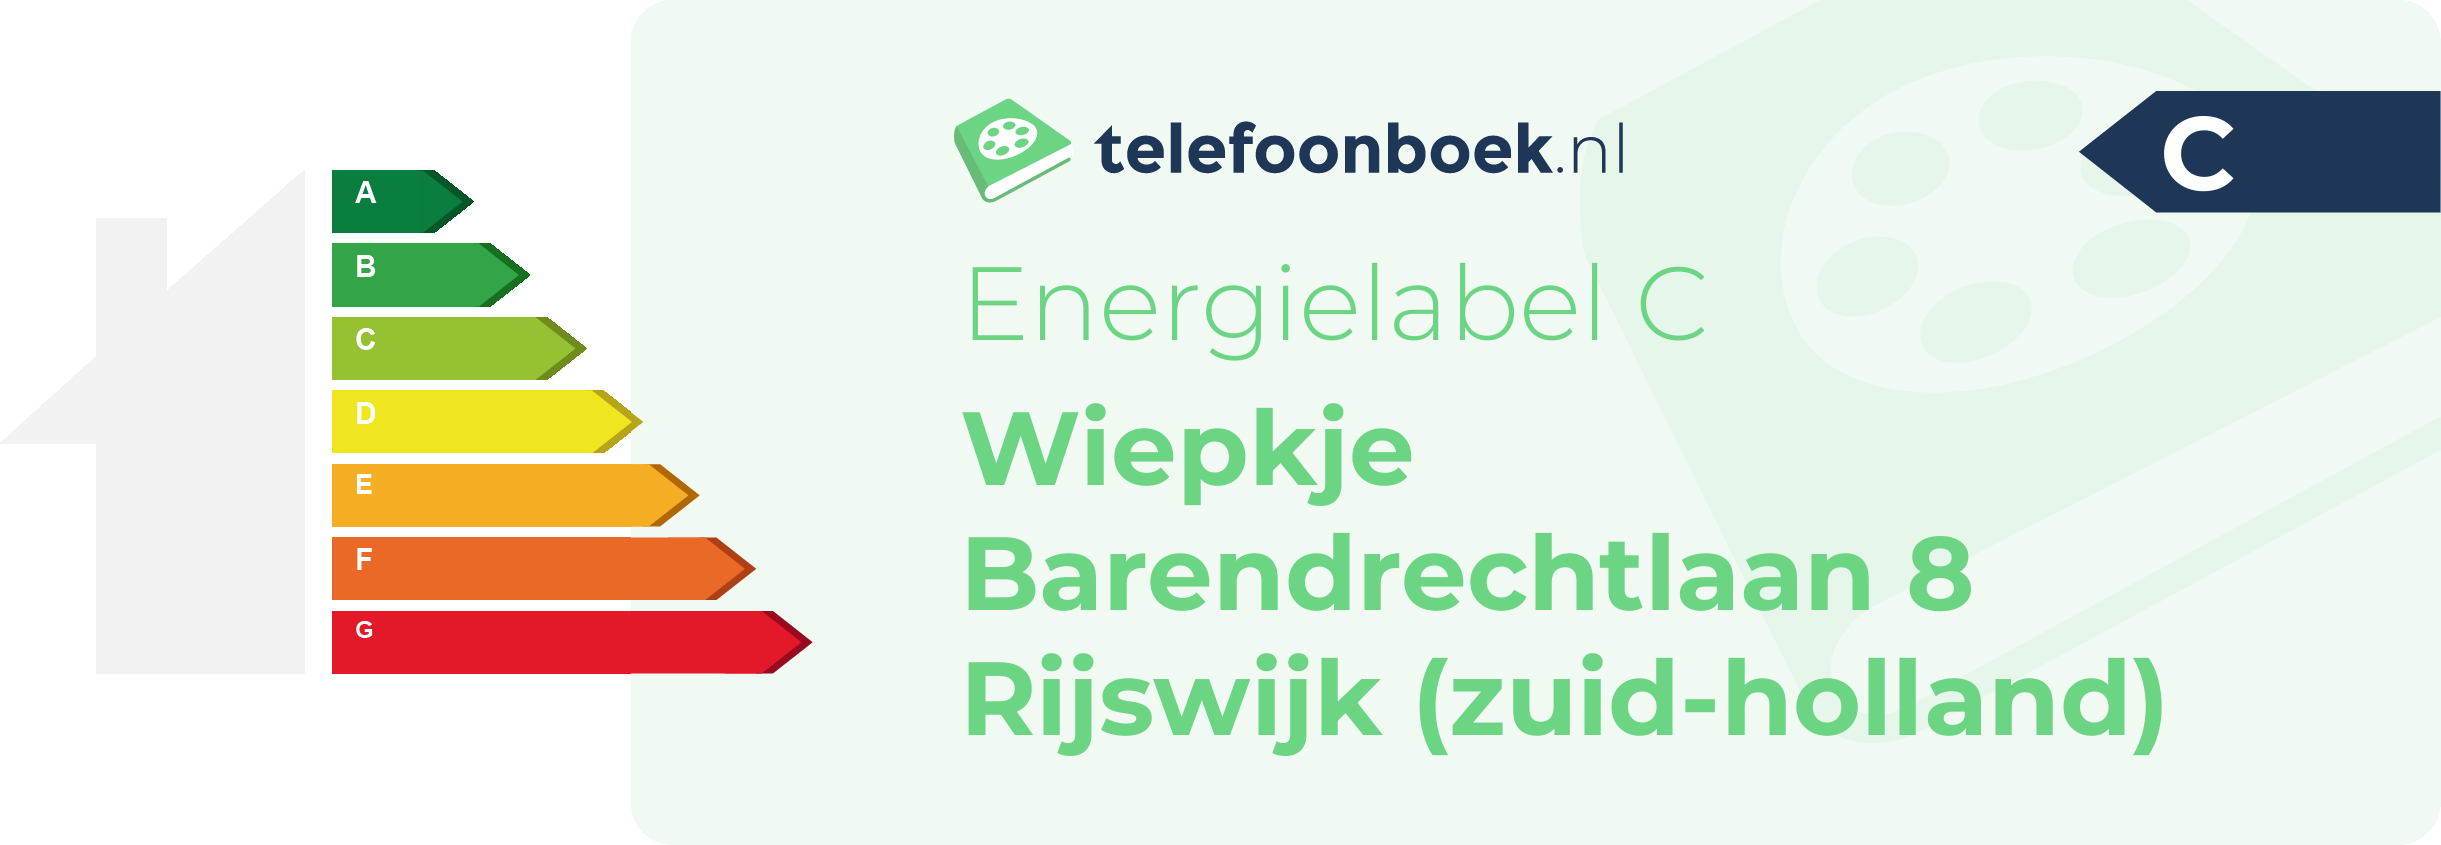 Energielabel Wiepkje Barendrechtlaan 8 Rijswijk (Zuid-Holland)